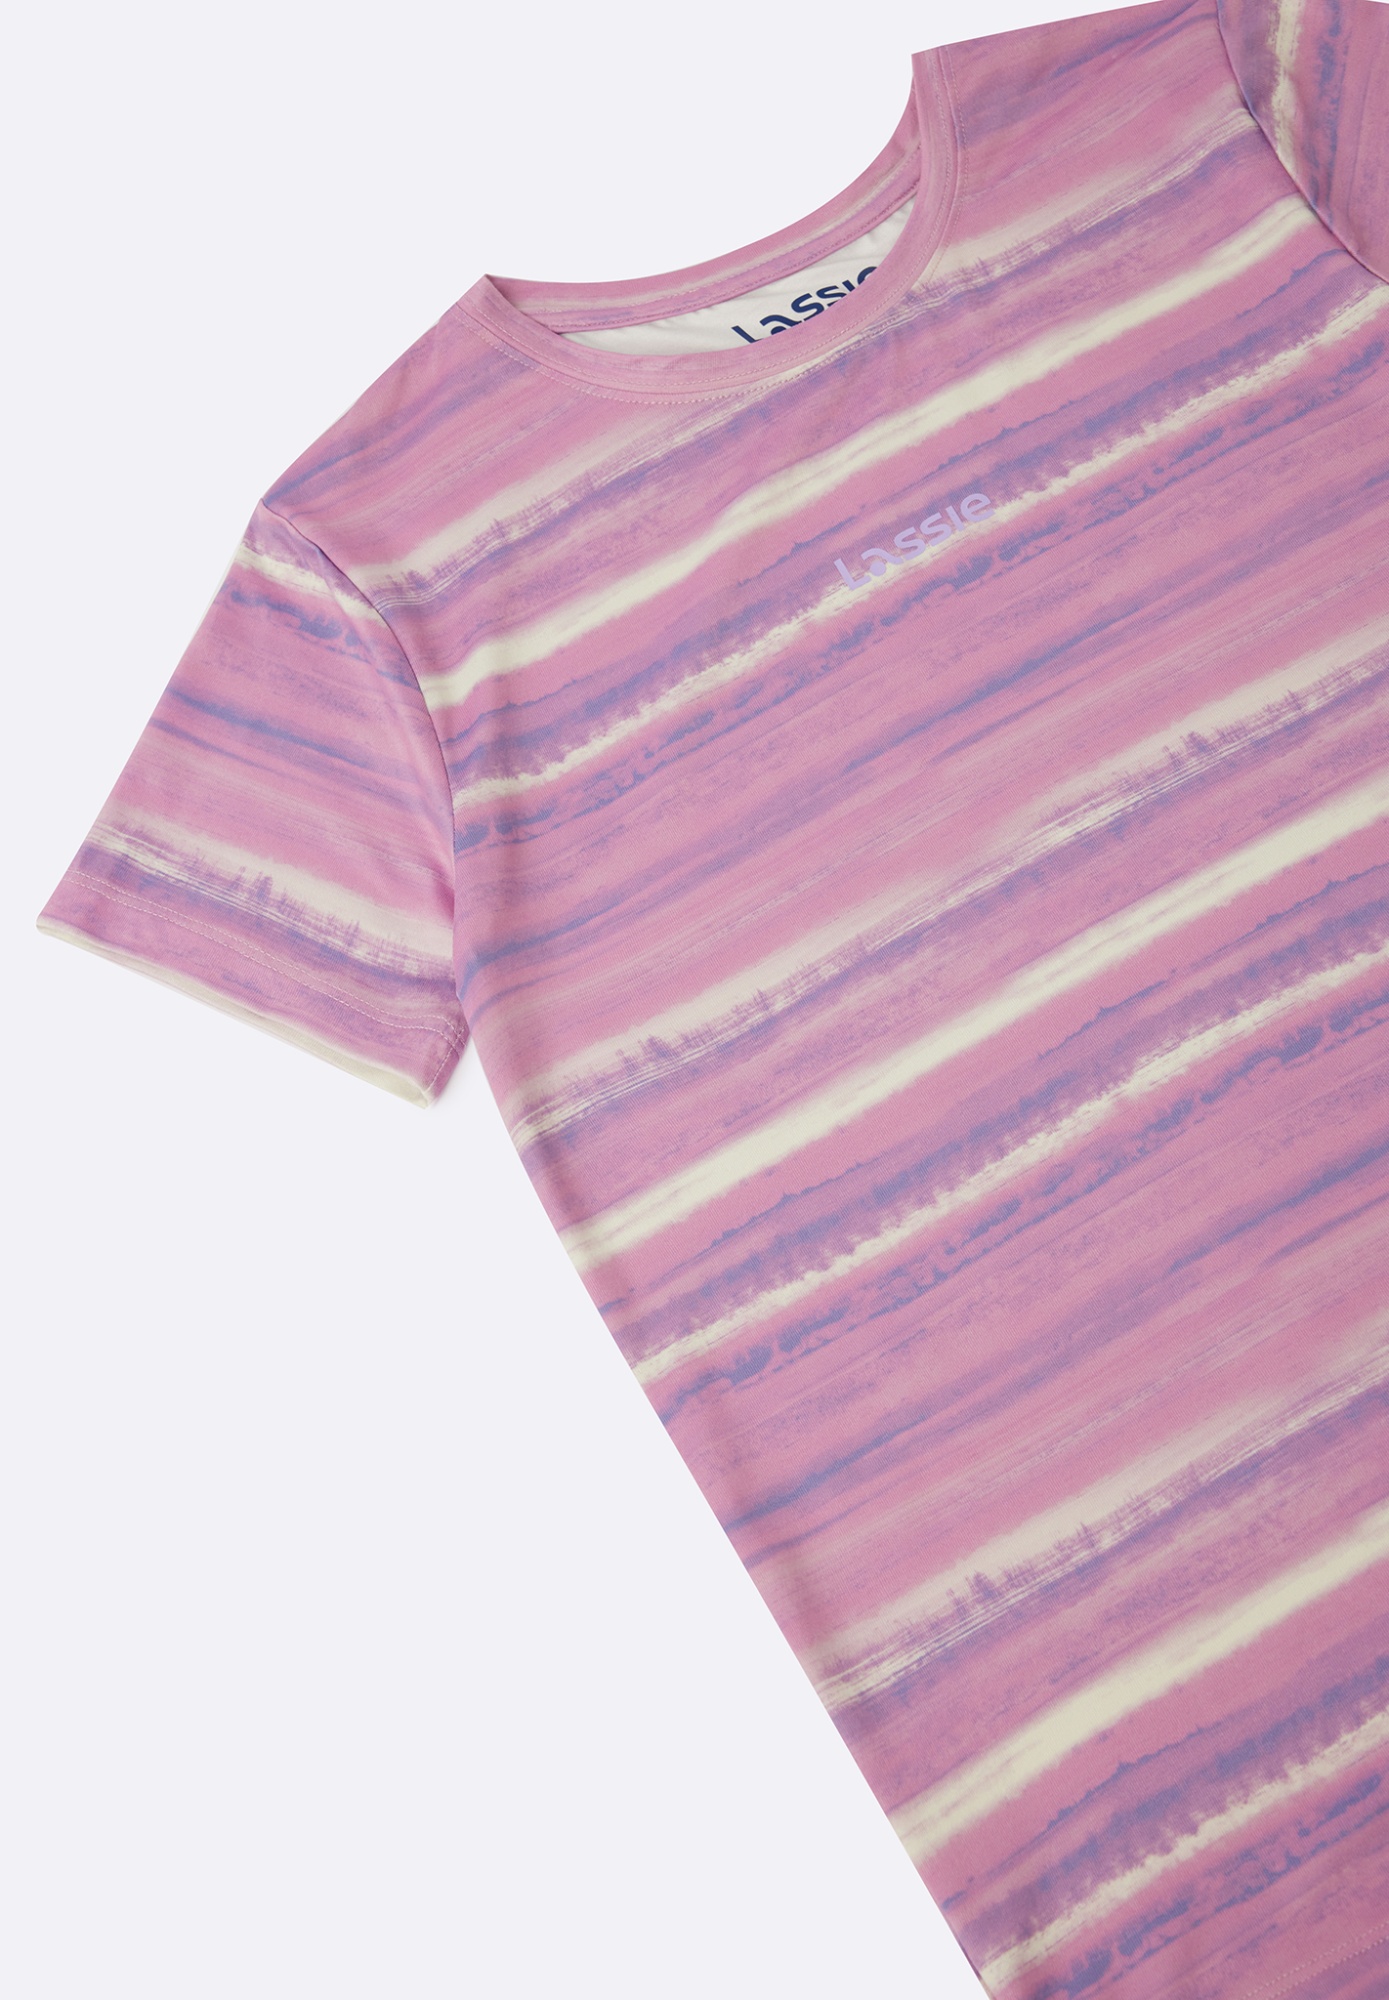 Детская футболка Lassie Speeder Фиолетовая | фото